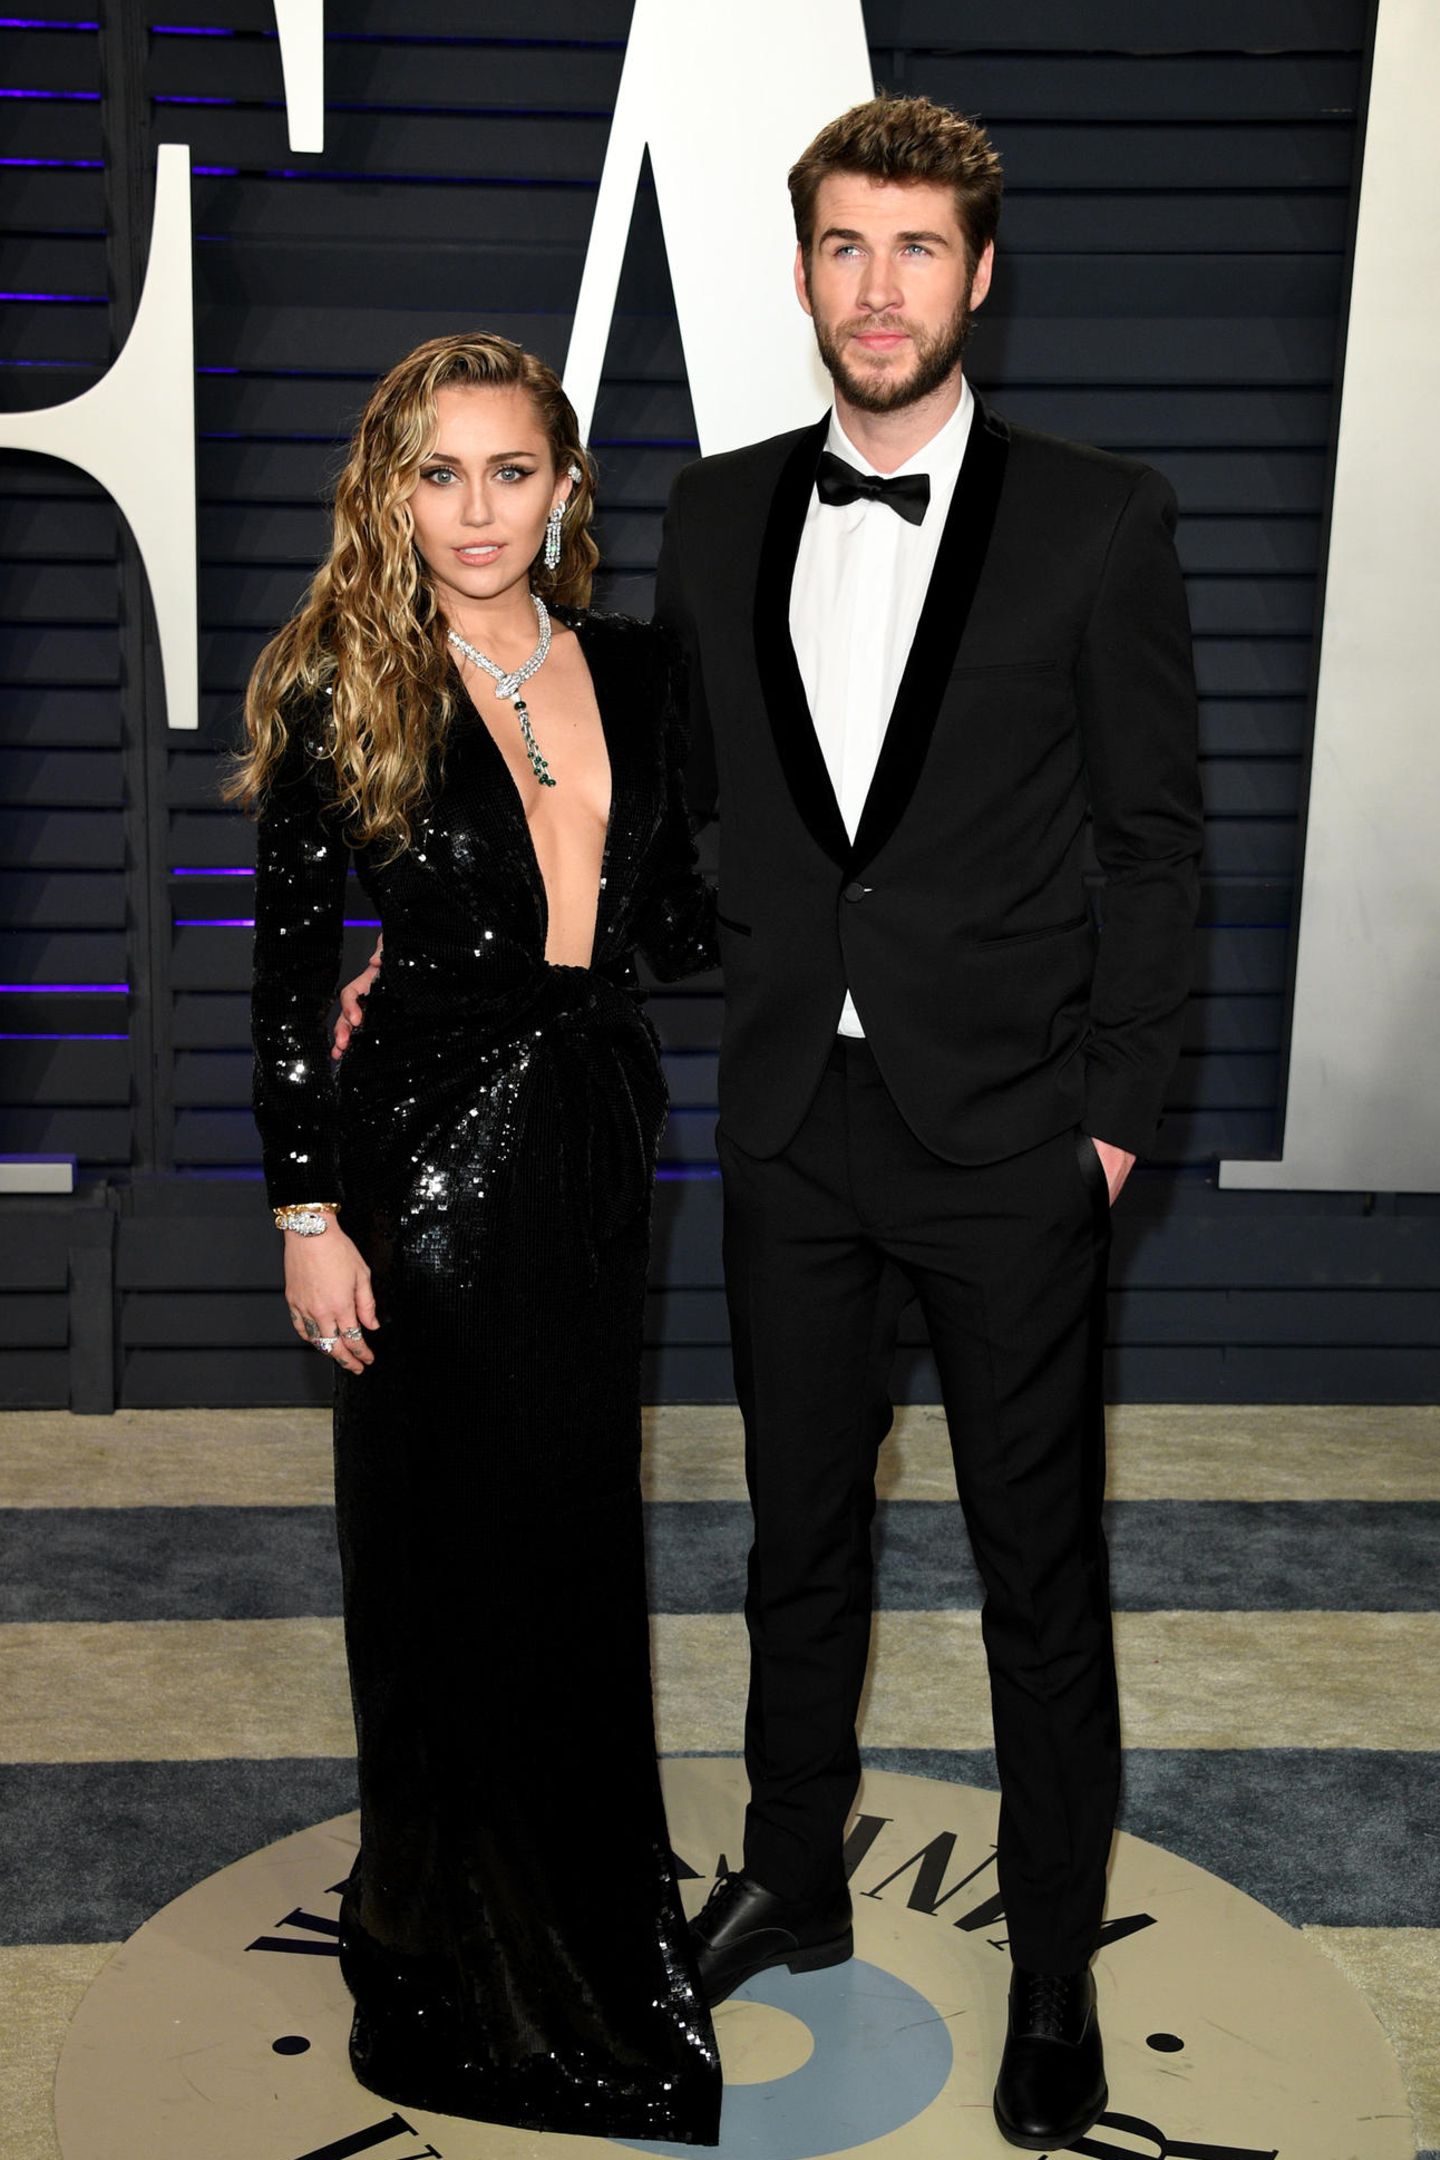 Für die Oscars-Party der "Vanity Fair" haben sich Miley Cyrus und Liam Hemsworth ganz besonders ins Zeug gelegt. Er greift zur Fliege, sie zum Pailletten-Kleid mit tiefem Ausschnitt.